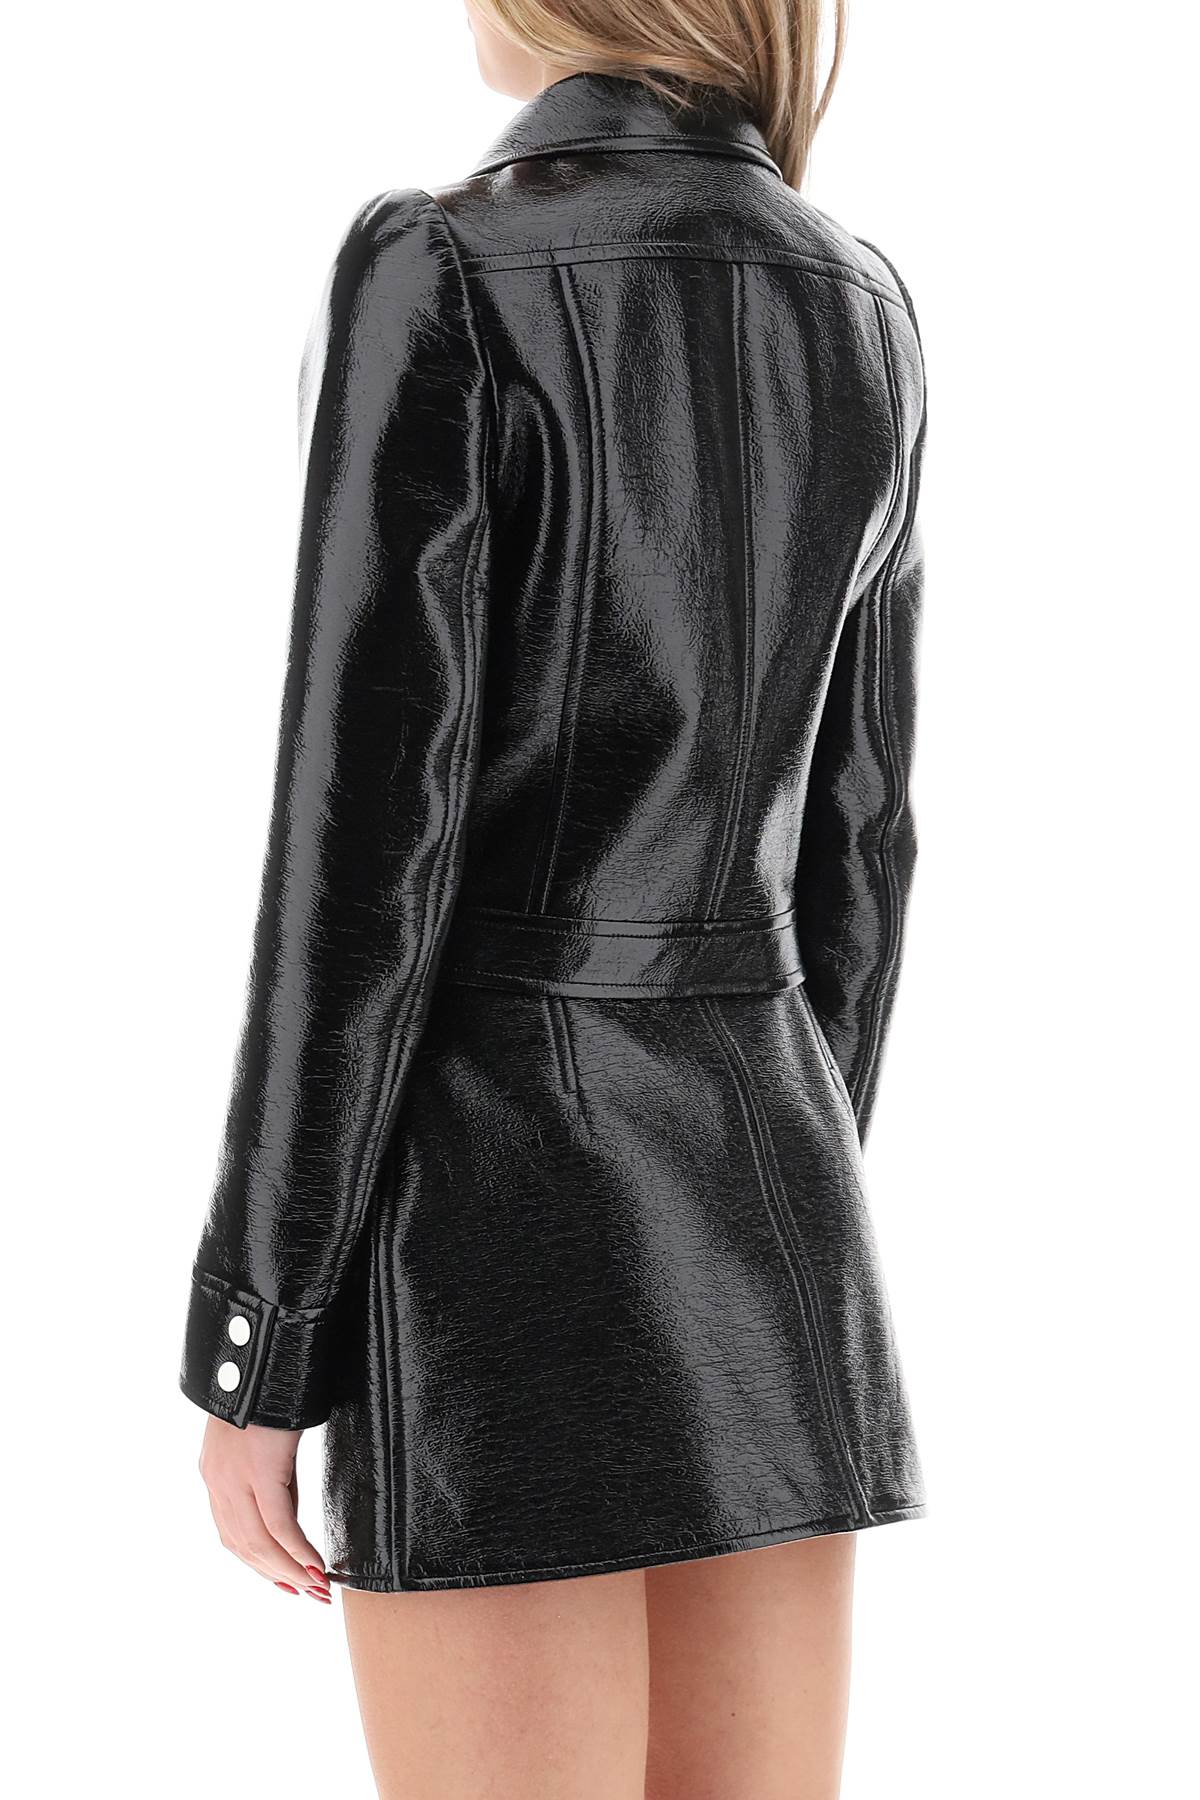 女士黑色涂層棉外套 - 女人的時尚必備品